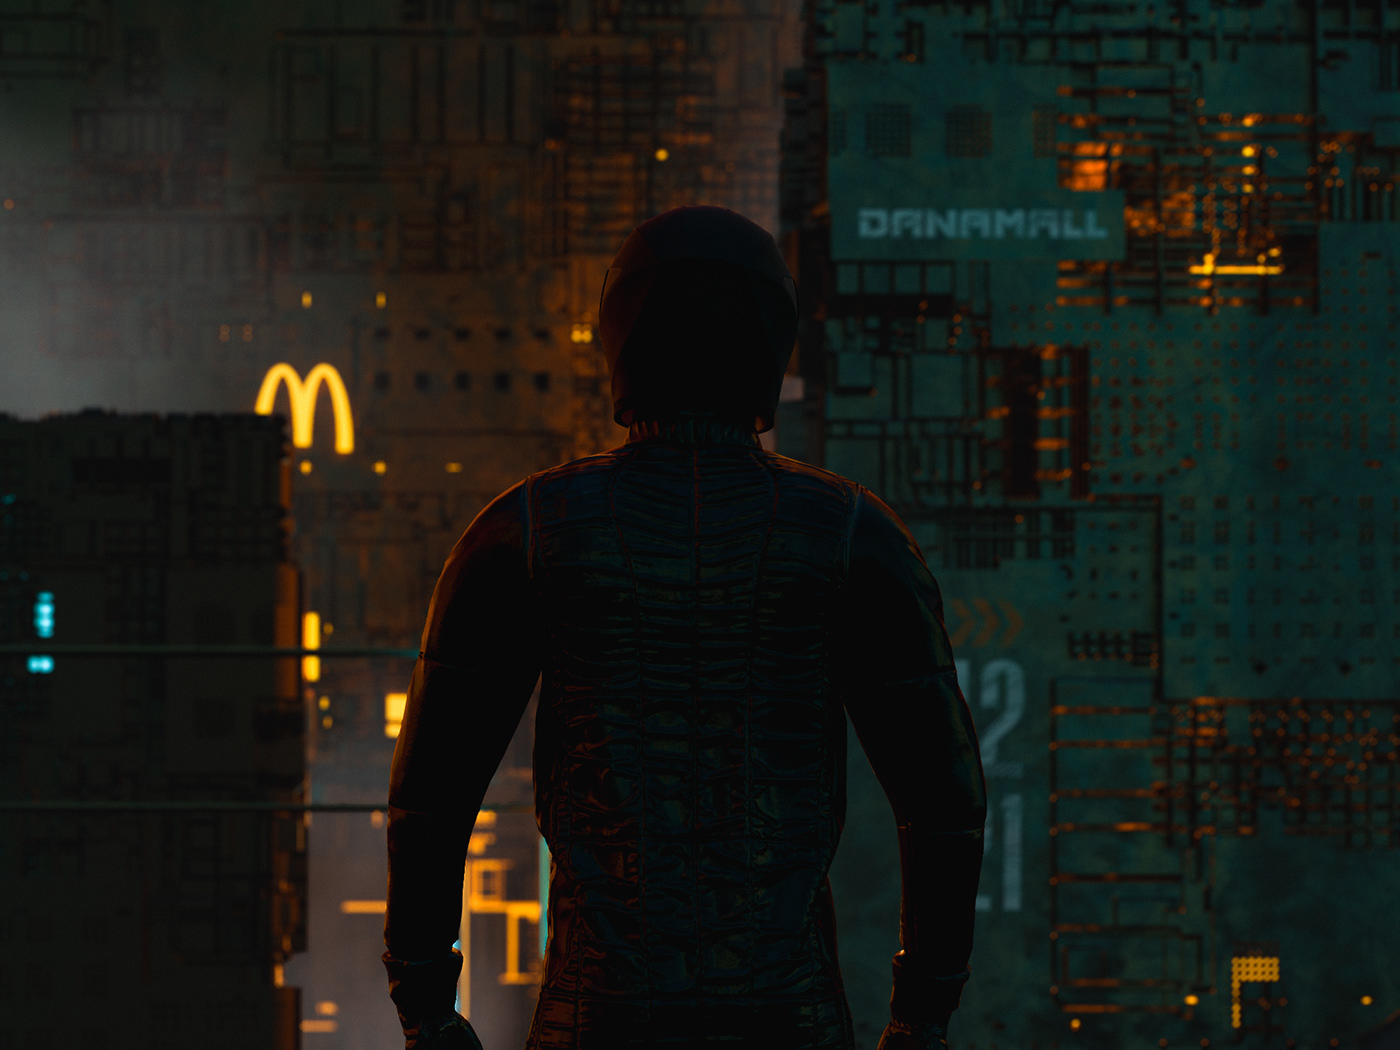 adobedimension Bladerunner city Cyberpunk materials minsk Render Scifi SubstanceAlchemist textures